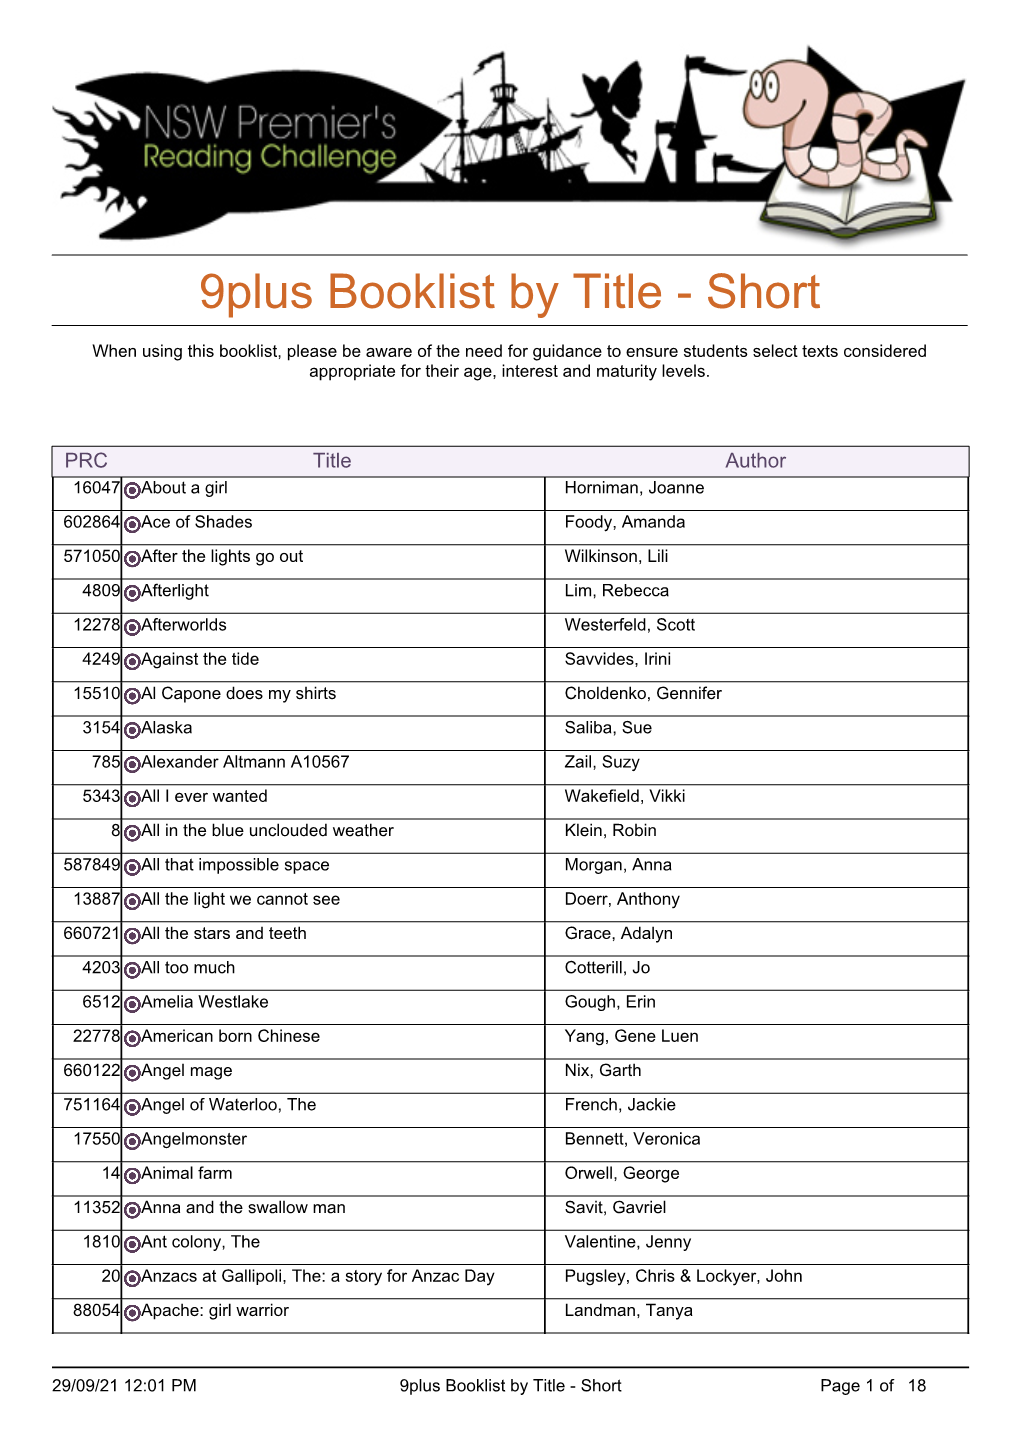 9Plus Booklist by Title - Short